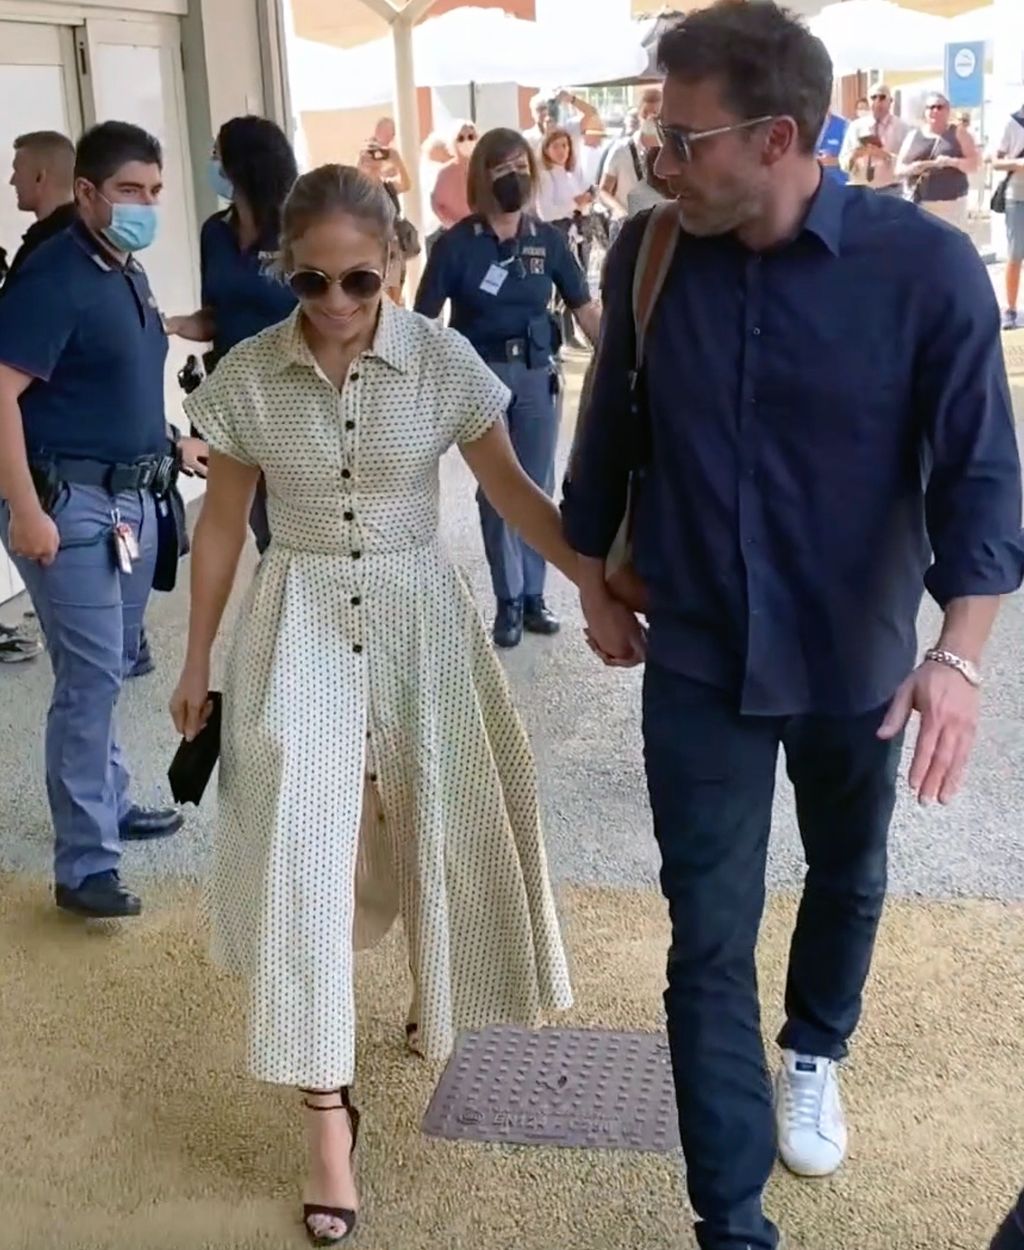 Yllättävä välikohtaus lentokentällä: Ben Affleck tarttui toimeen, kun yli-innokas fani lähestyi Jennifer Lopezia